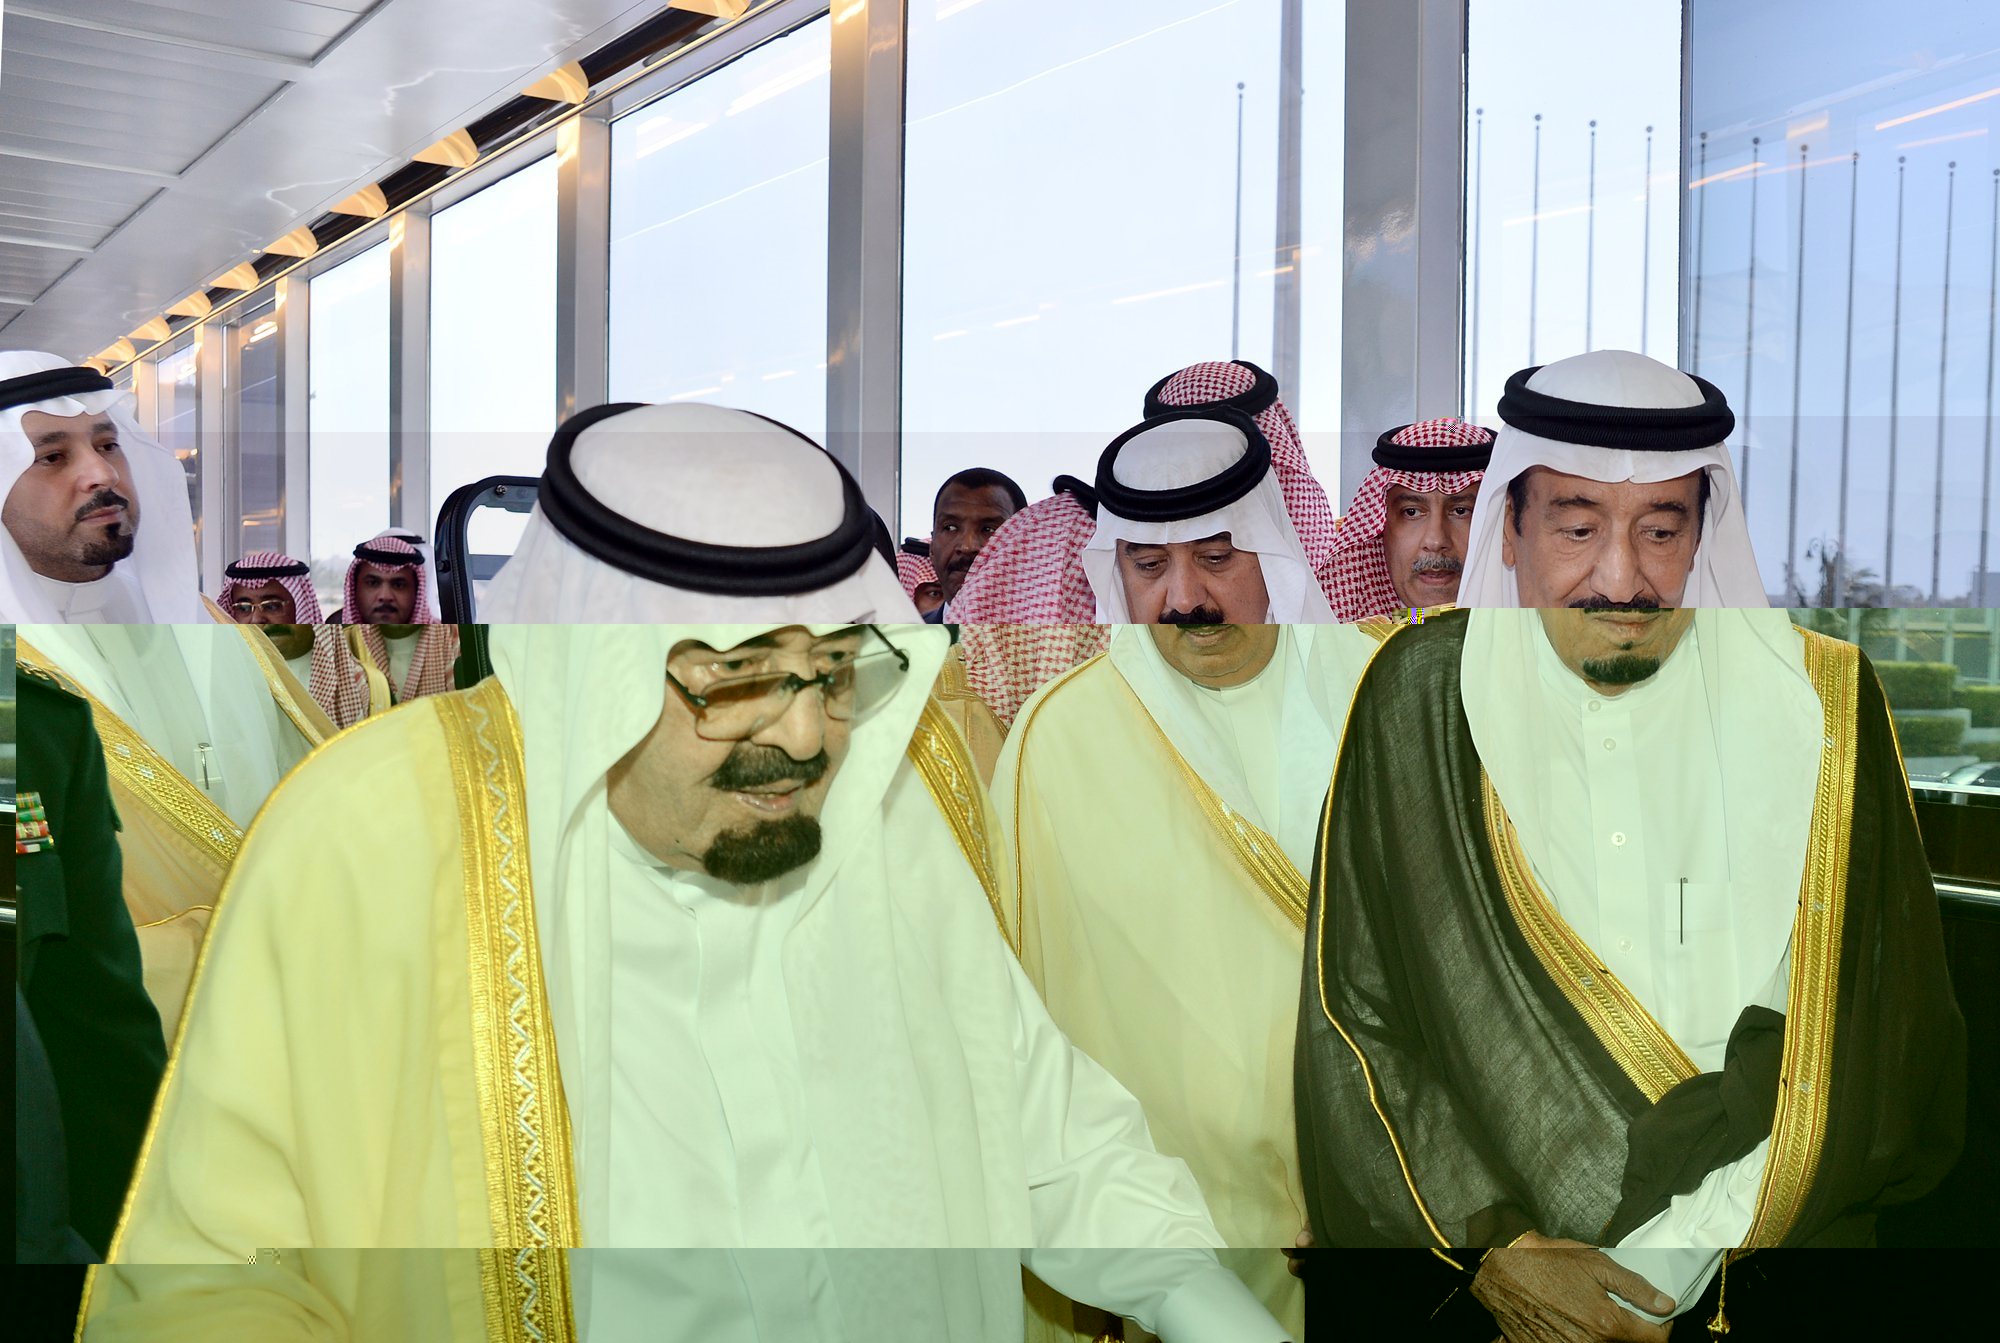 مجلة تكشف ما تعتبره "النفاق والمجاملات" في التعديل الوزاري السعودي